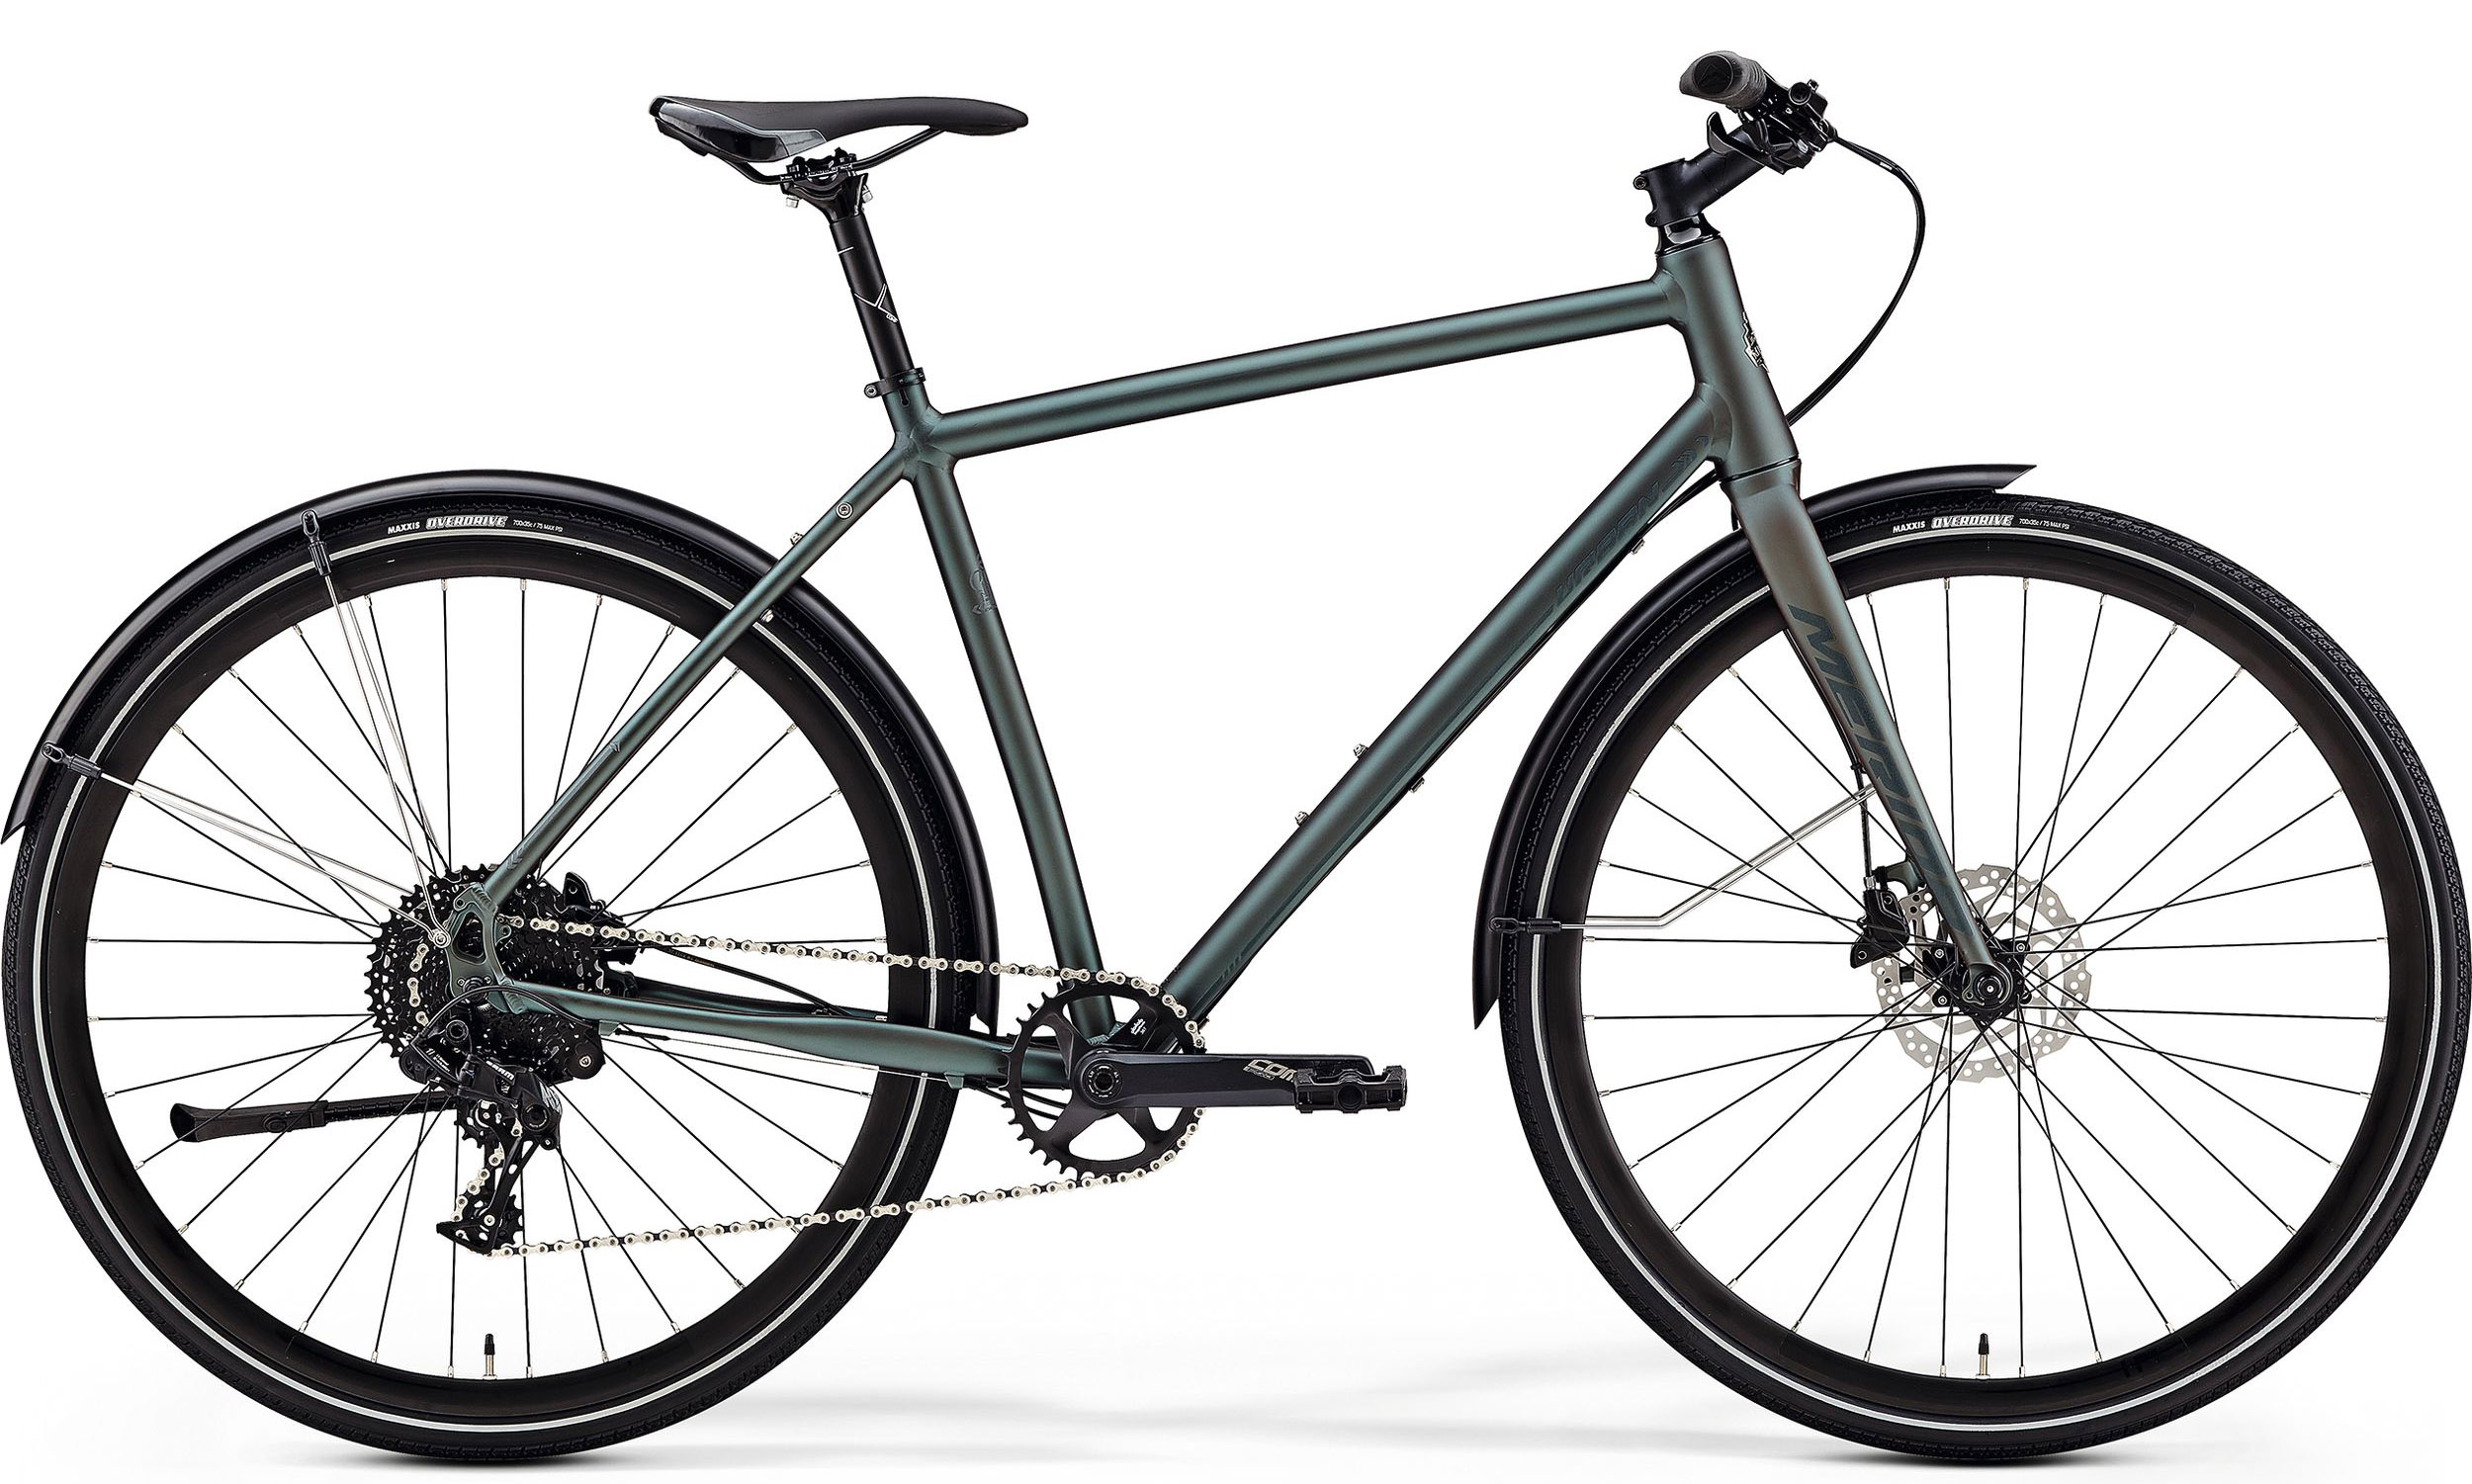  Отзывы о Городском велосипеде Merida Crossway Urban 300 2020